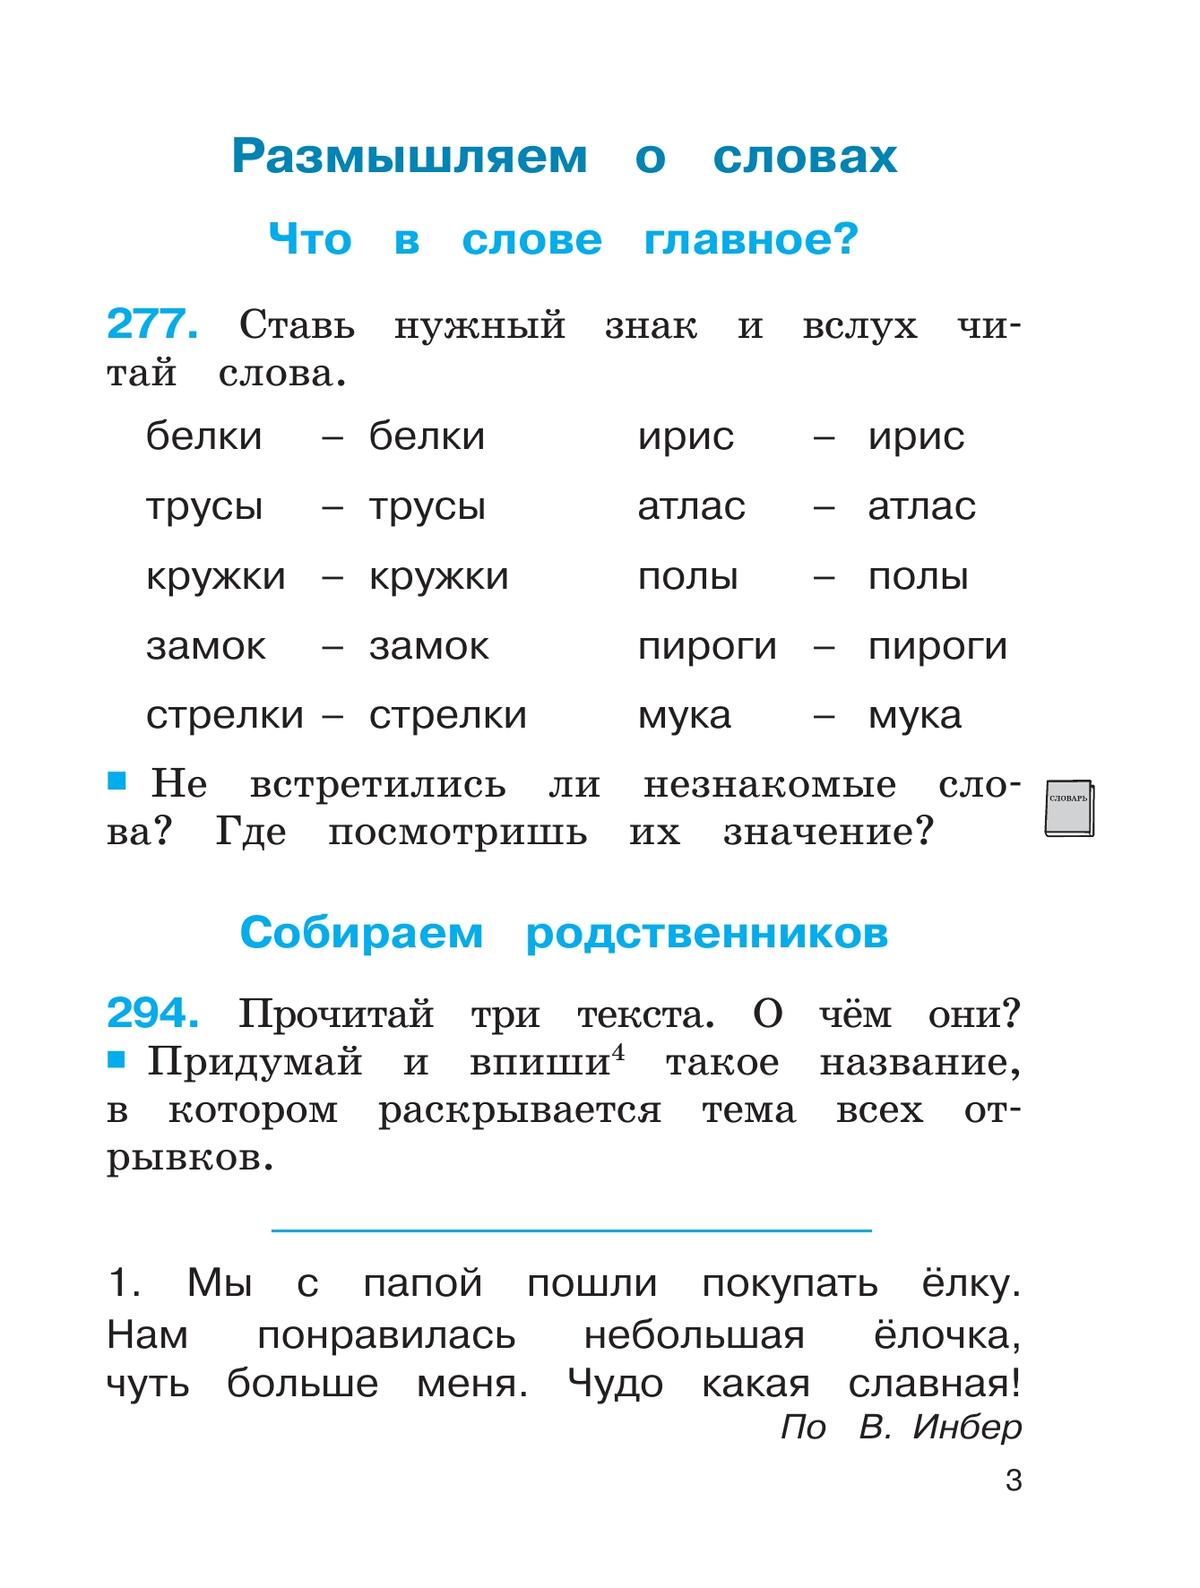 Русский язык. Тетрадь-задачник. 2 класс. В 3 частях. Часть 2 8